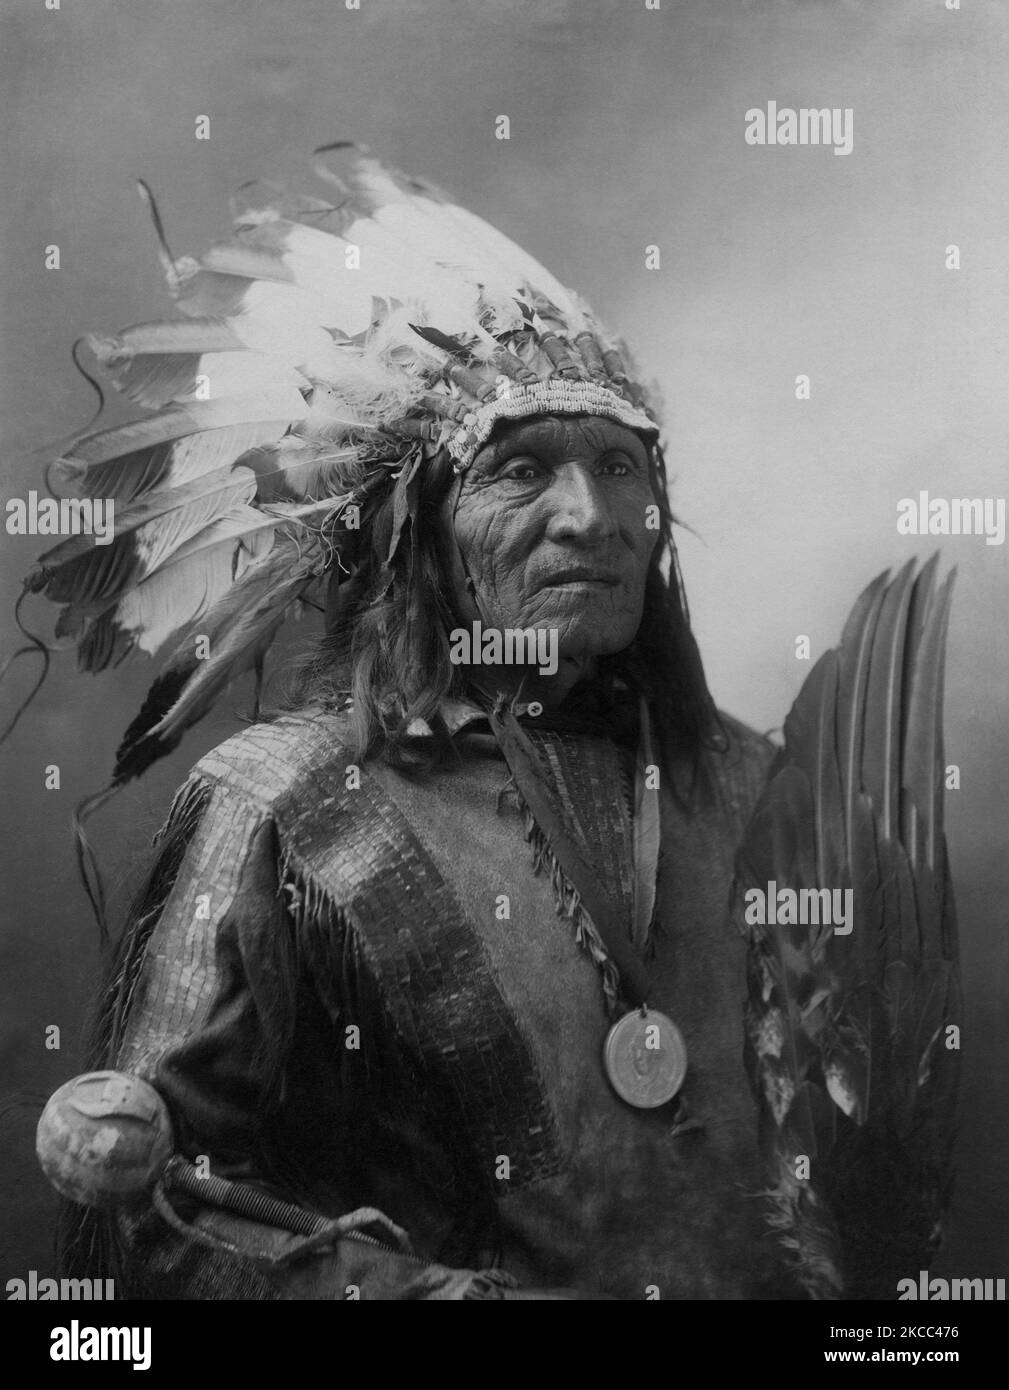 Ritratto di He Dog, membro dell'Oglala Lakota, 1900. Foto Stock